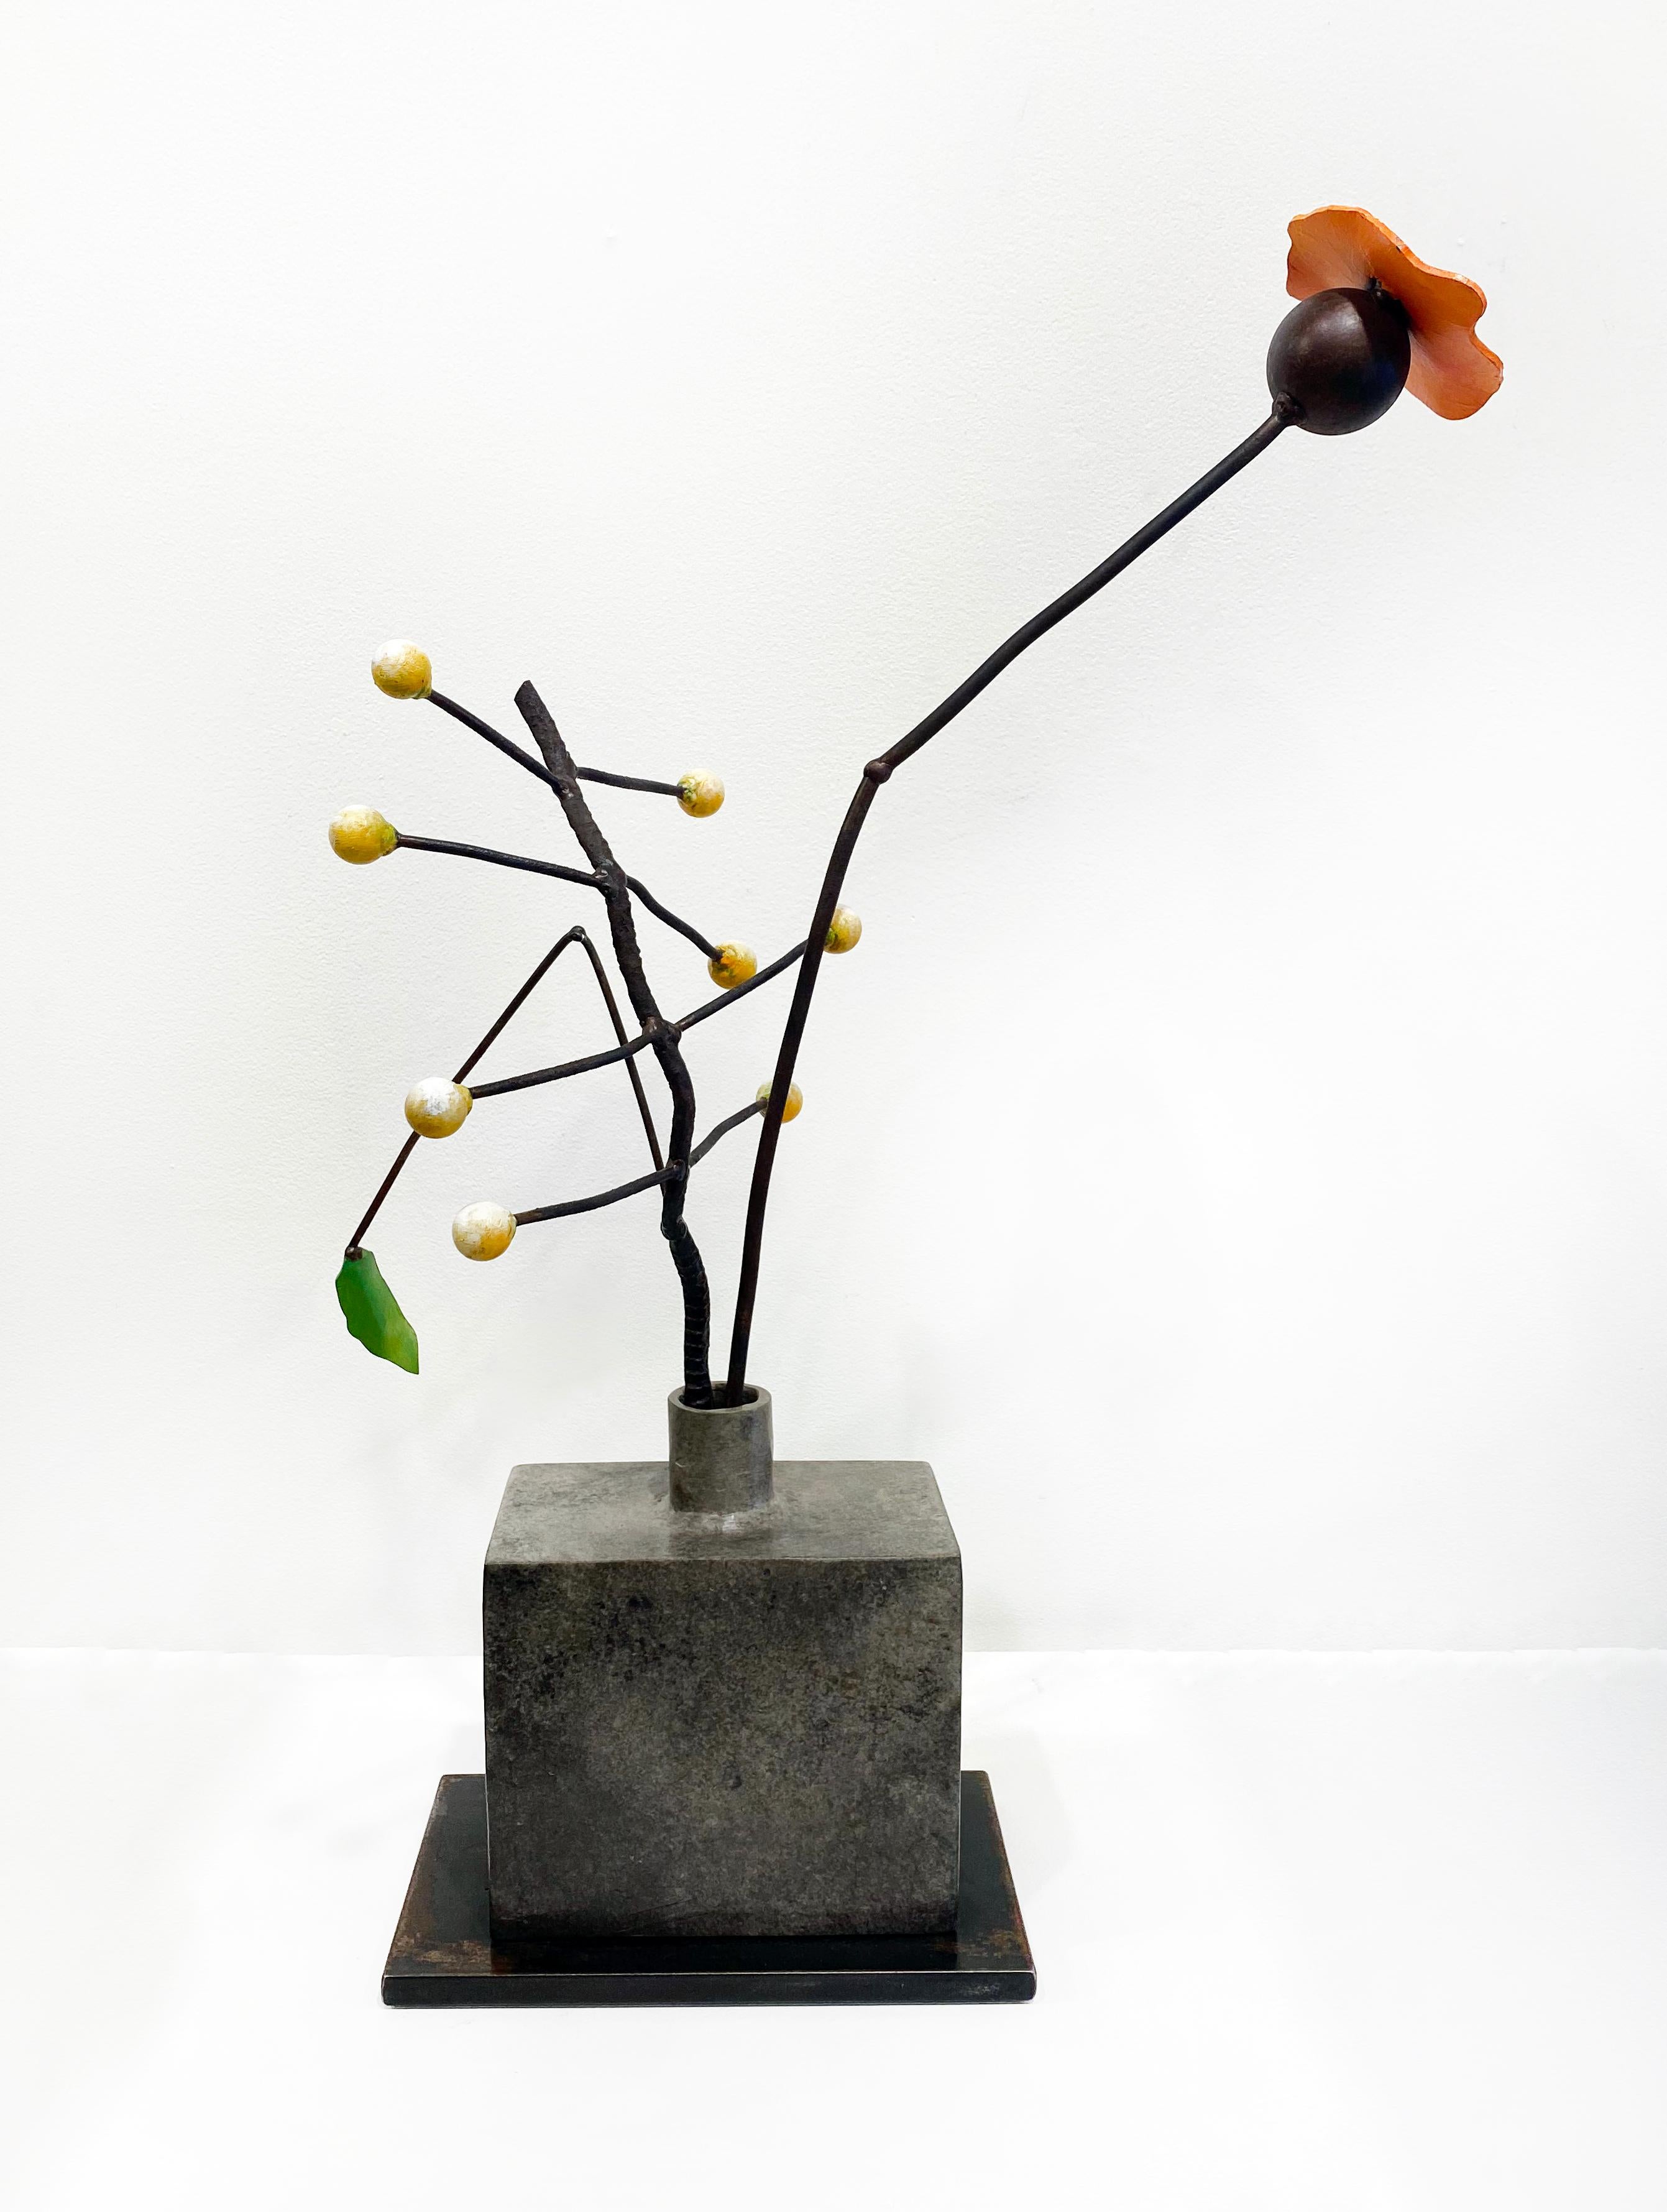 mohn, Saatgut" von David Kimball Anderson, 2021. Bronze, Stahl und Farbe, 26 x 20 x 8 Zoll. Diese Skulptur besteht aus einer quadratischen Vase aus Bronze mit grauer Patina. Sie besteht aus einer Reihe weißer Glühbirnen, die von bronzenen Zweigen